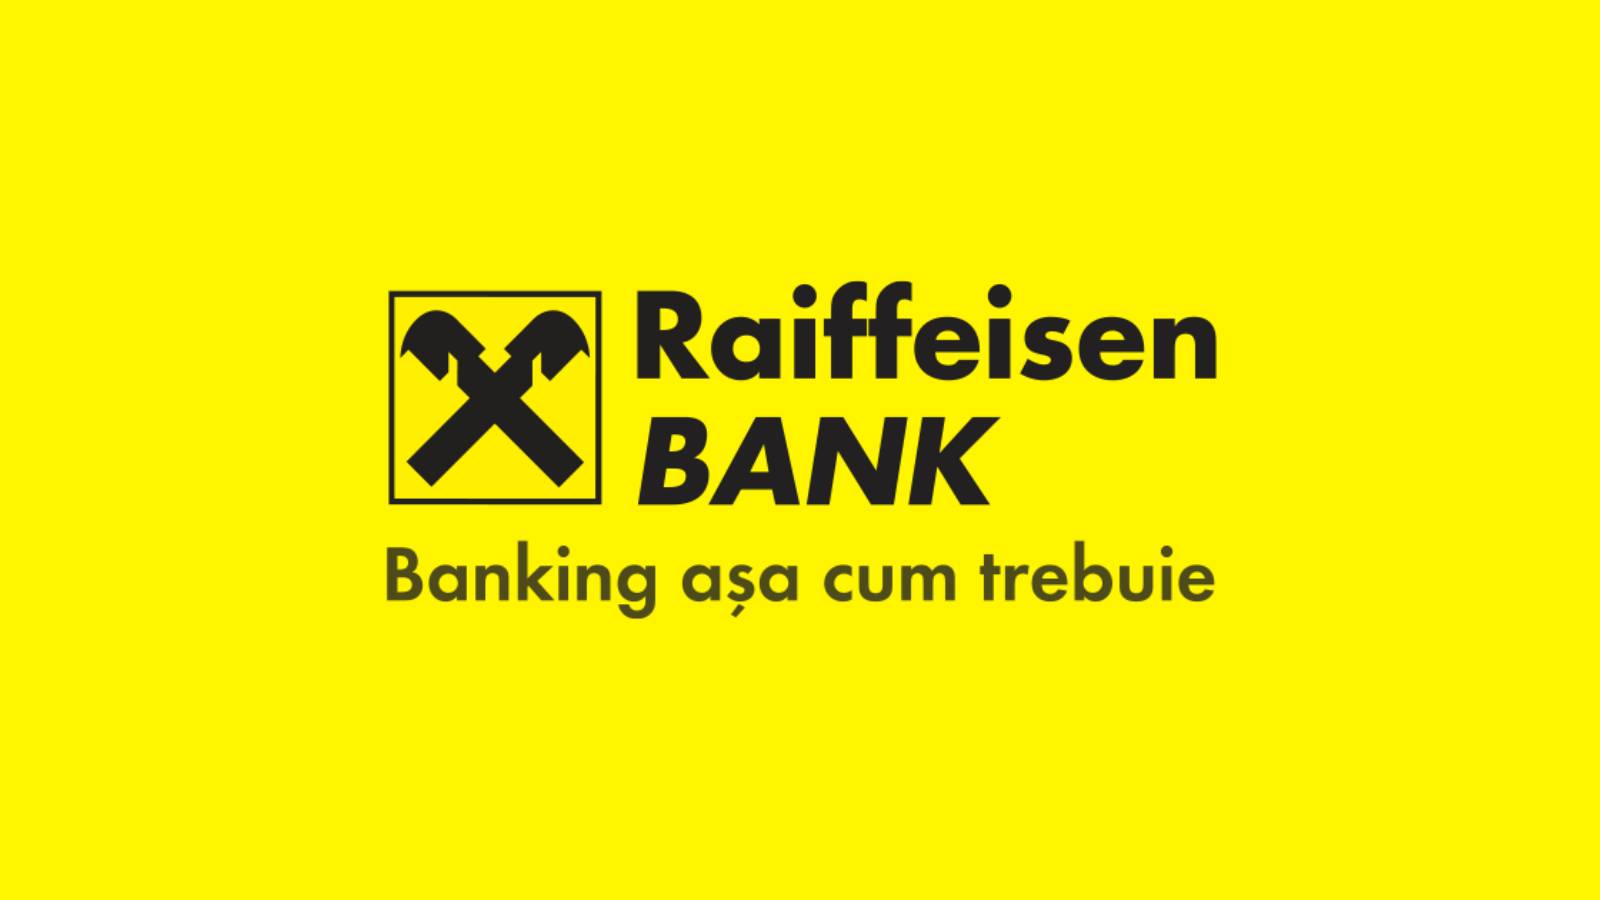 Raiffeisen Bank hastighet